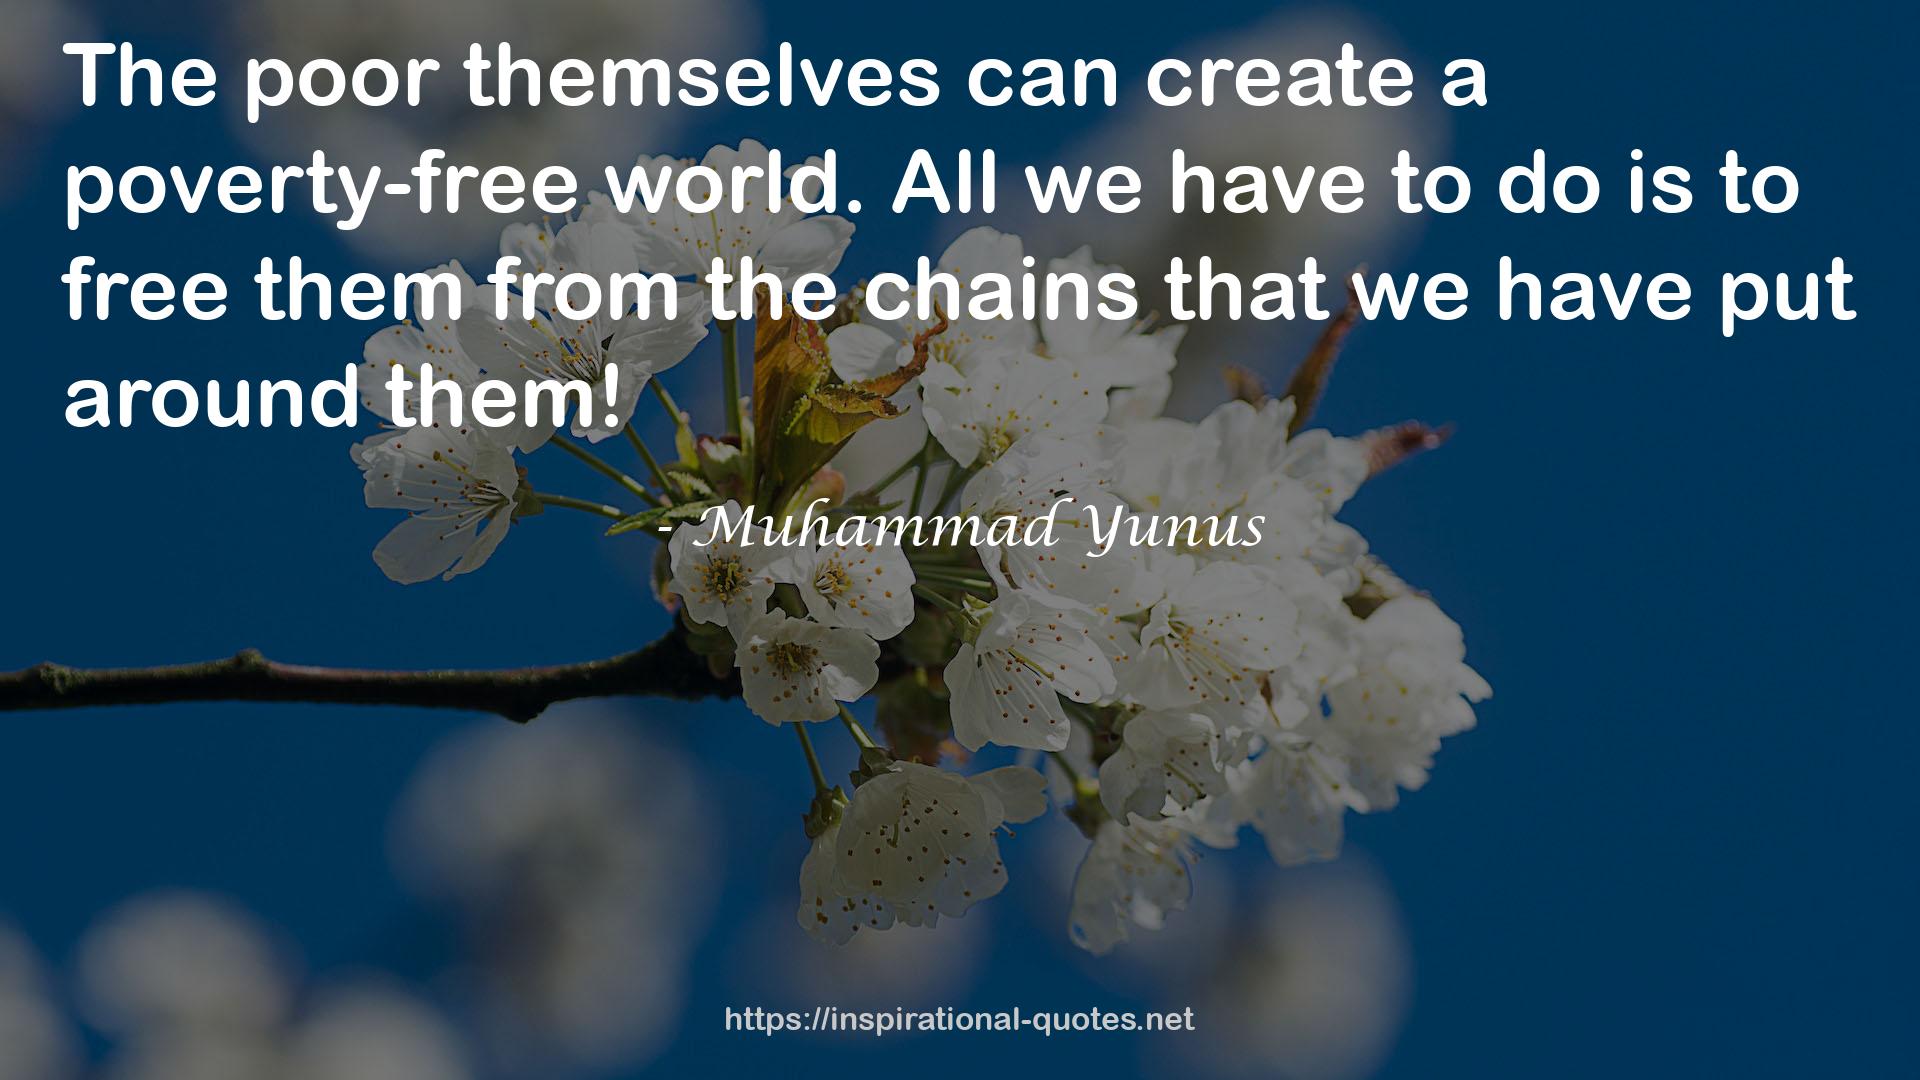 Muhammad Yunus QUOTES